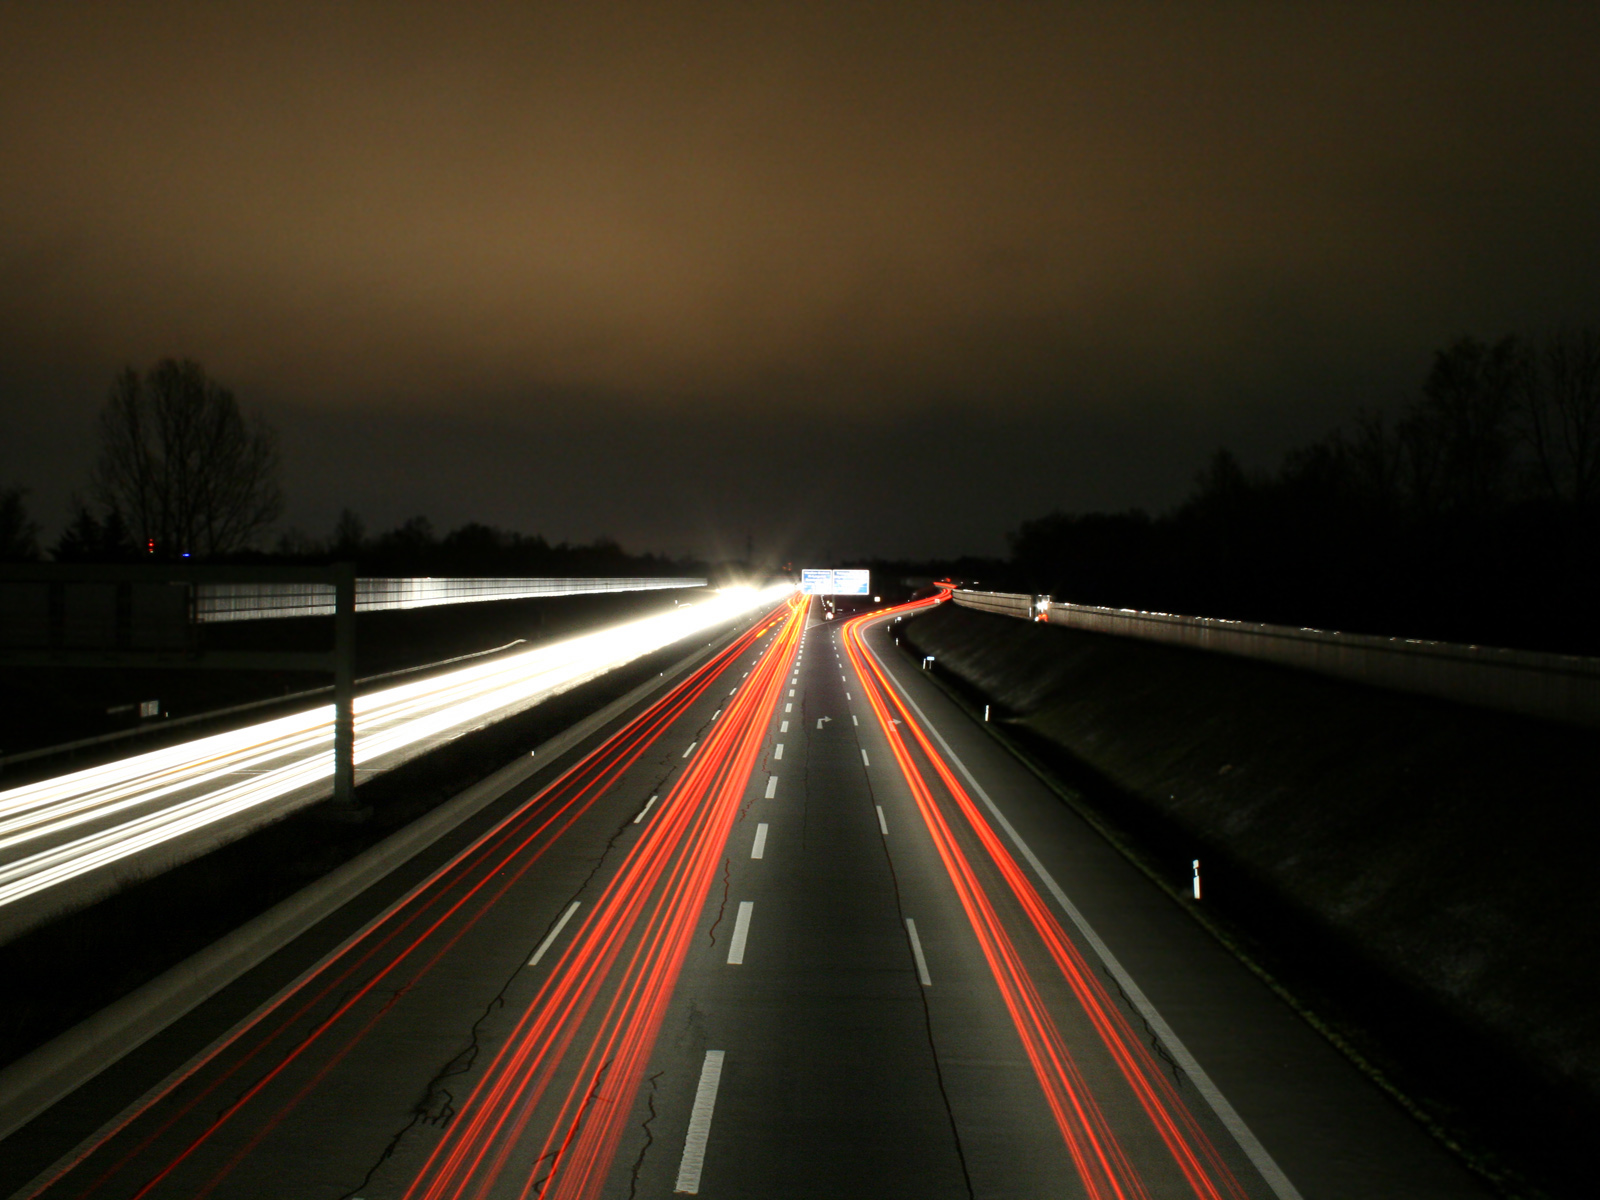 Fond d'ecran highway at night